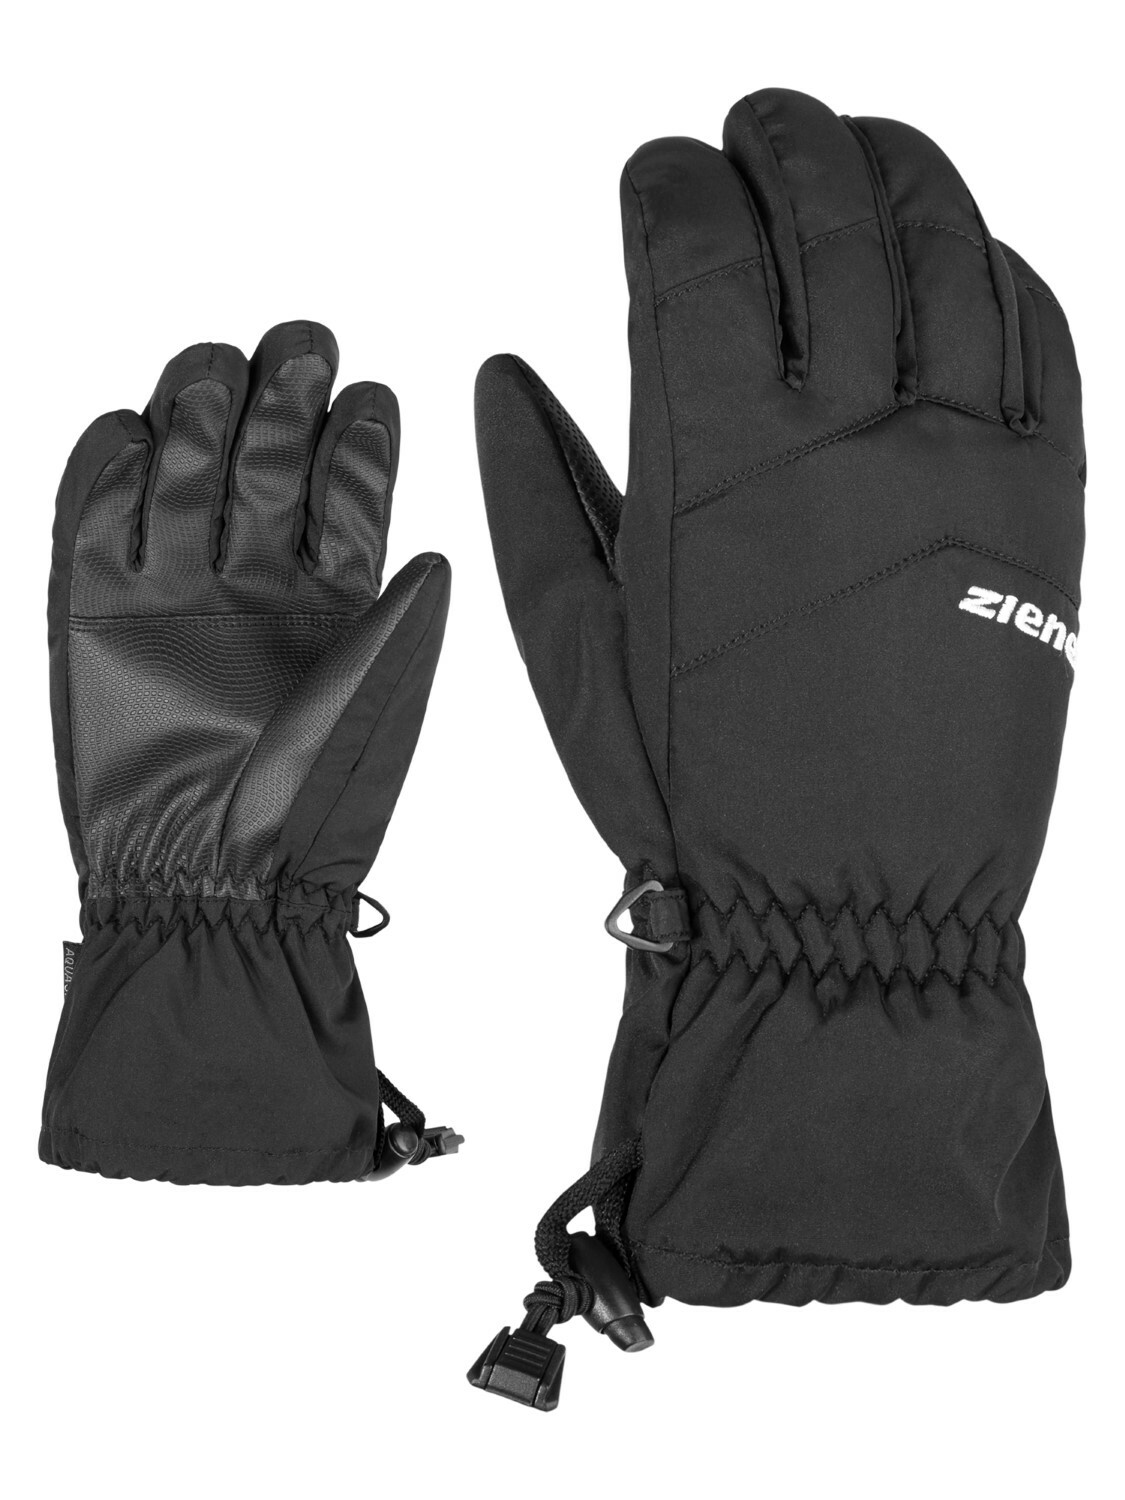 | 4059749246305 | Ziener Black 6 Lett Glove AsR 12 Junior |